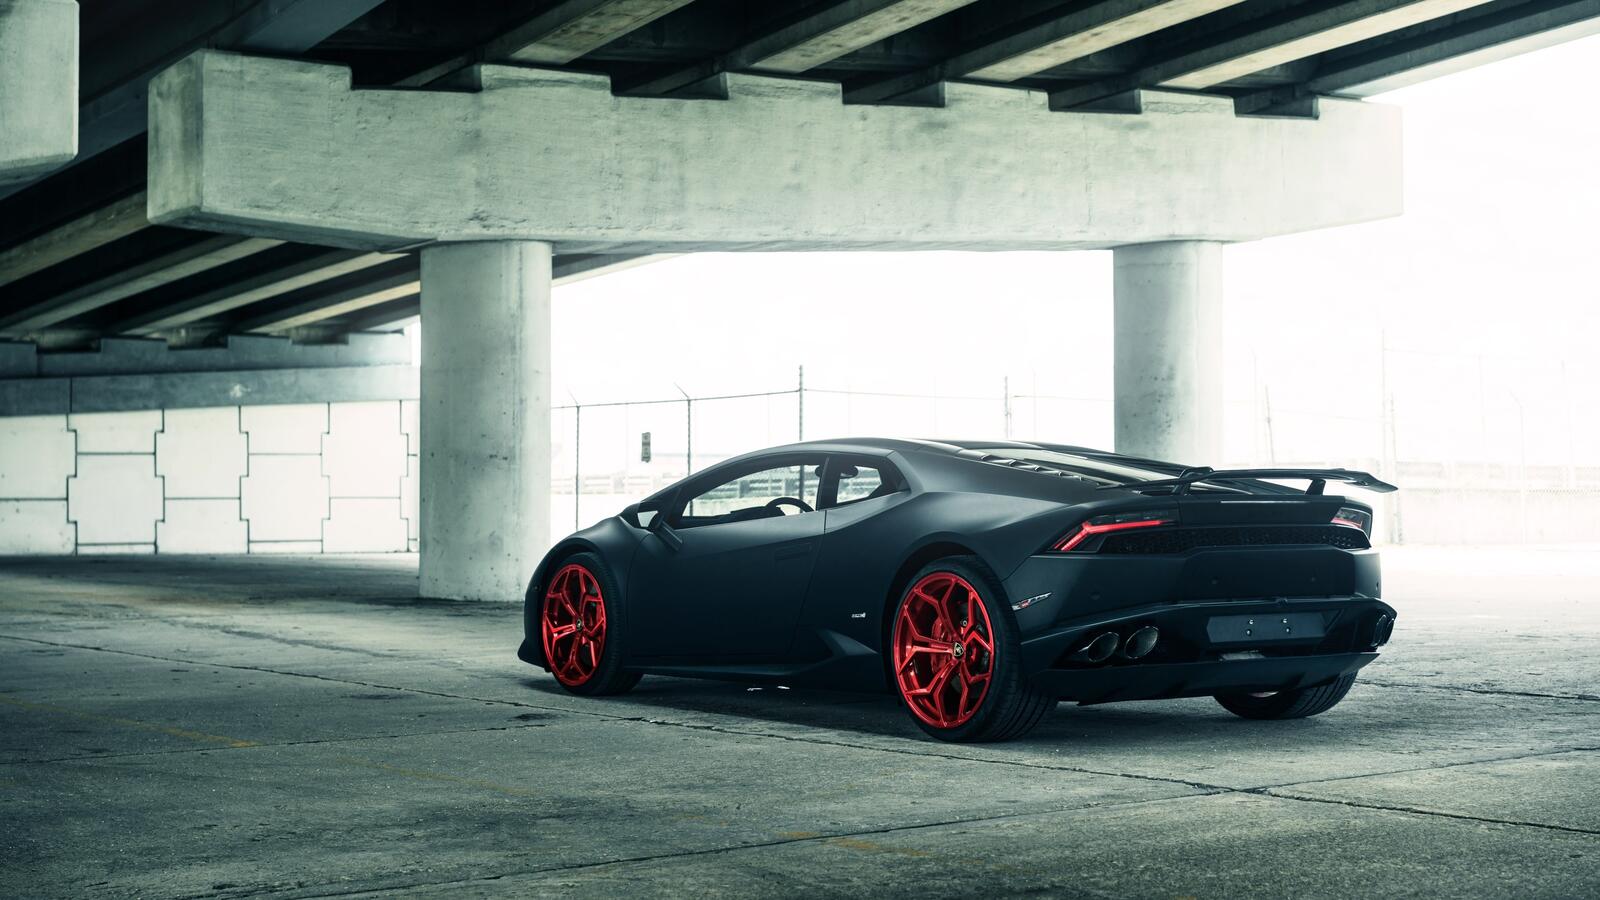 Free photo Black matte Lamborghini Huracan rear view